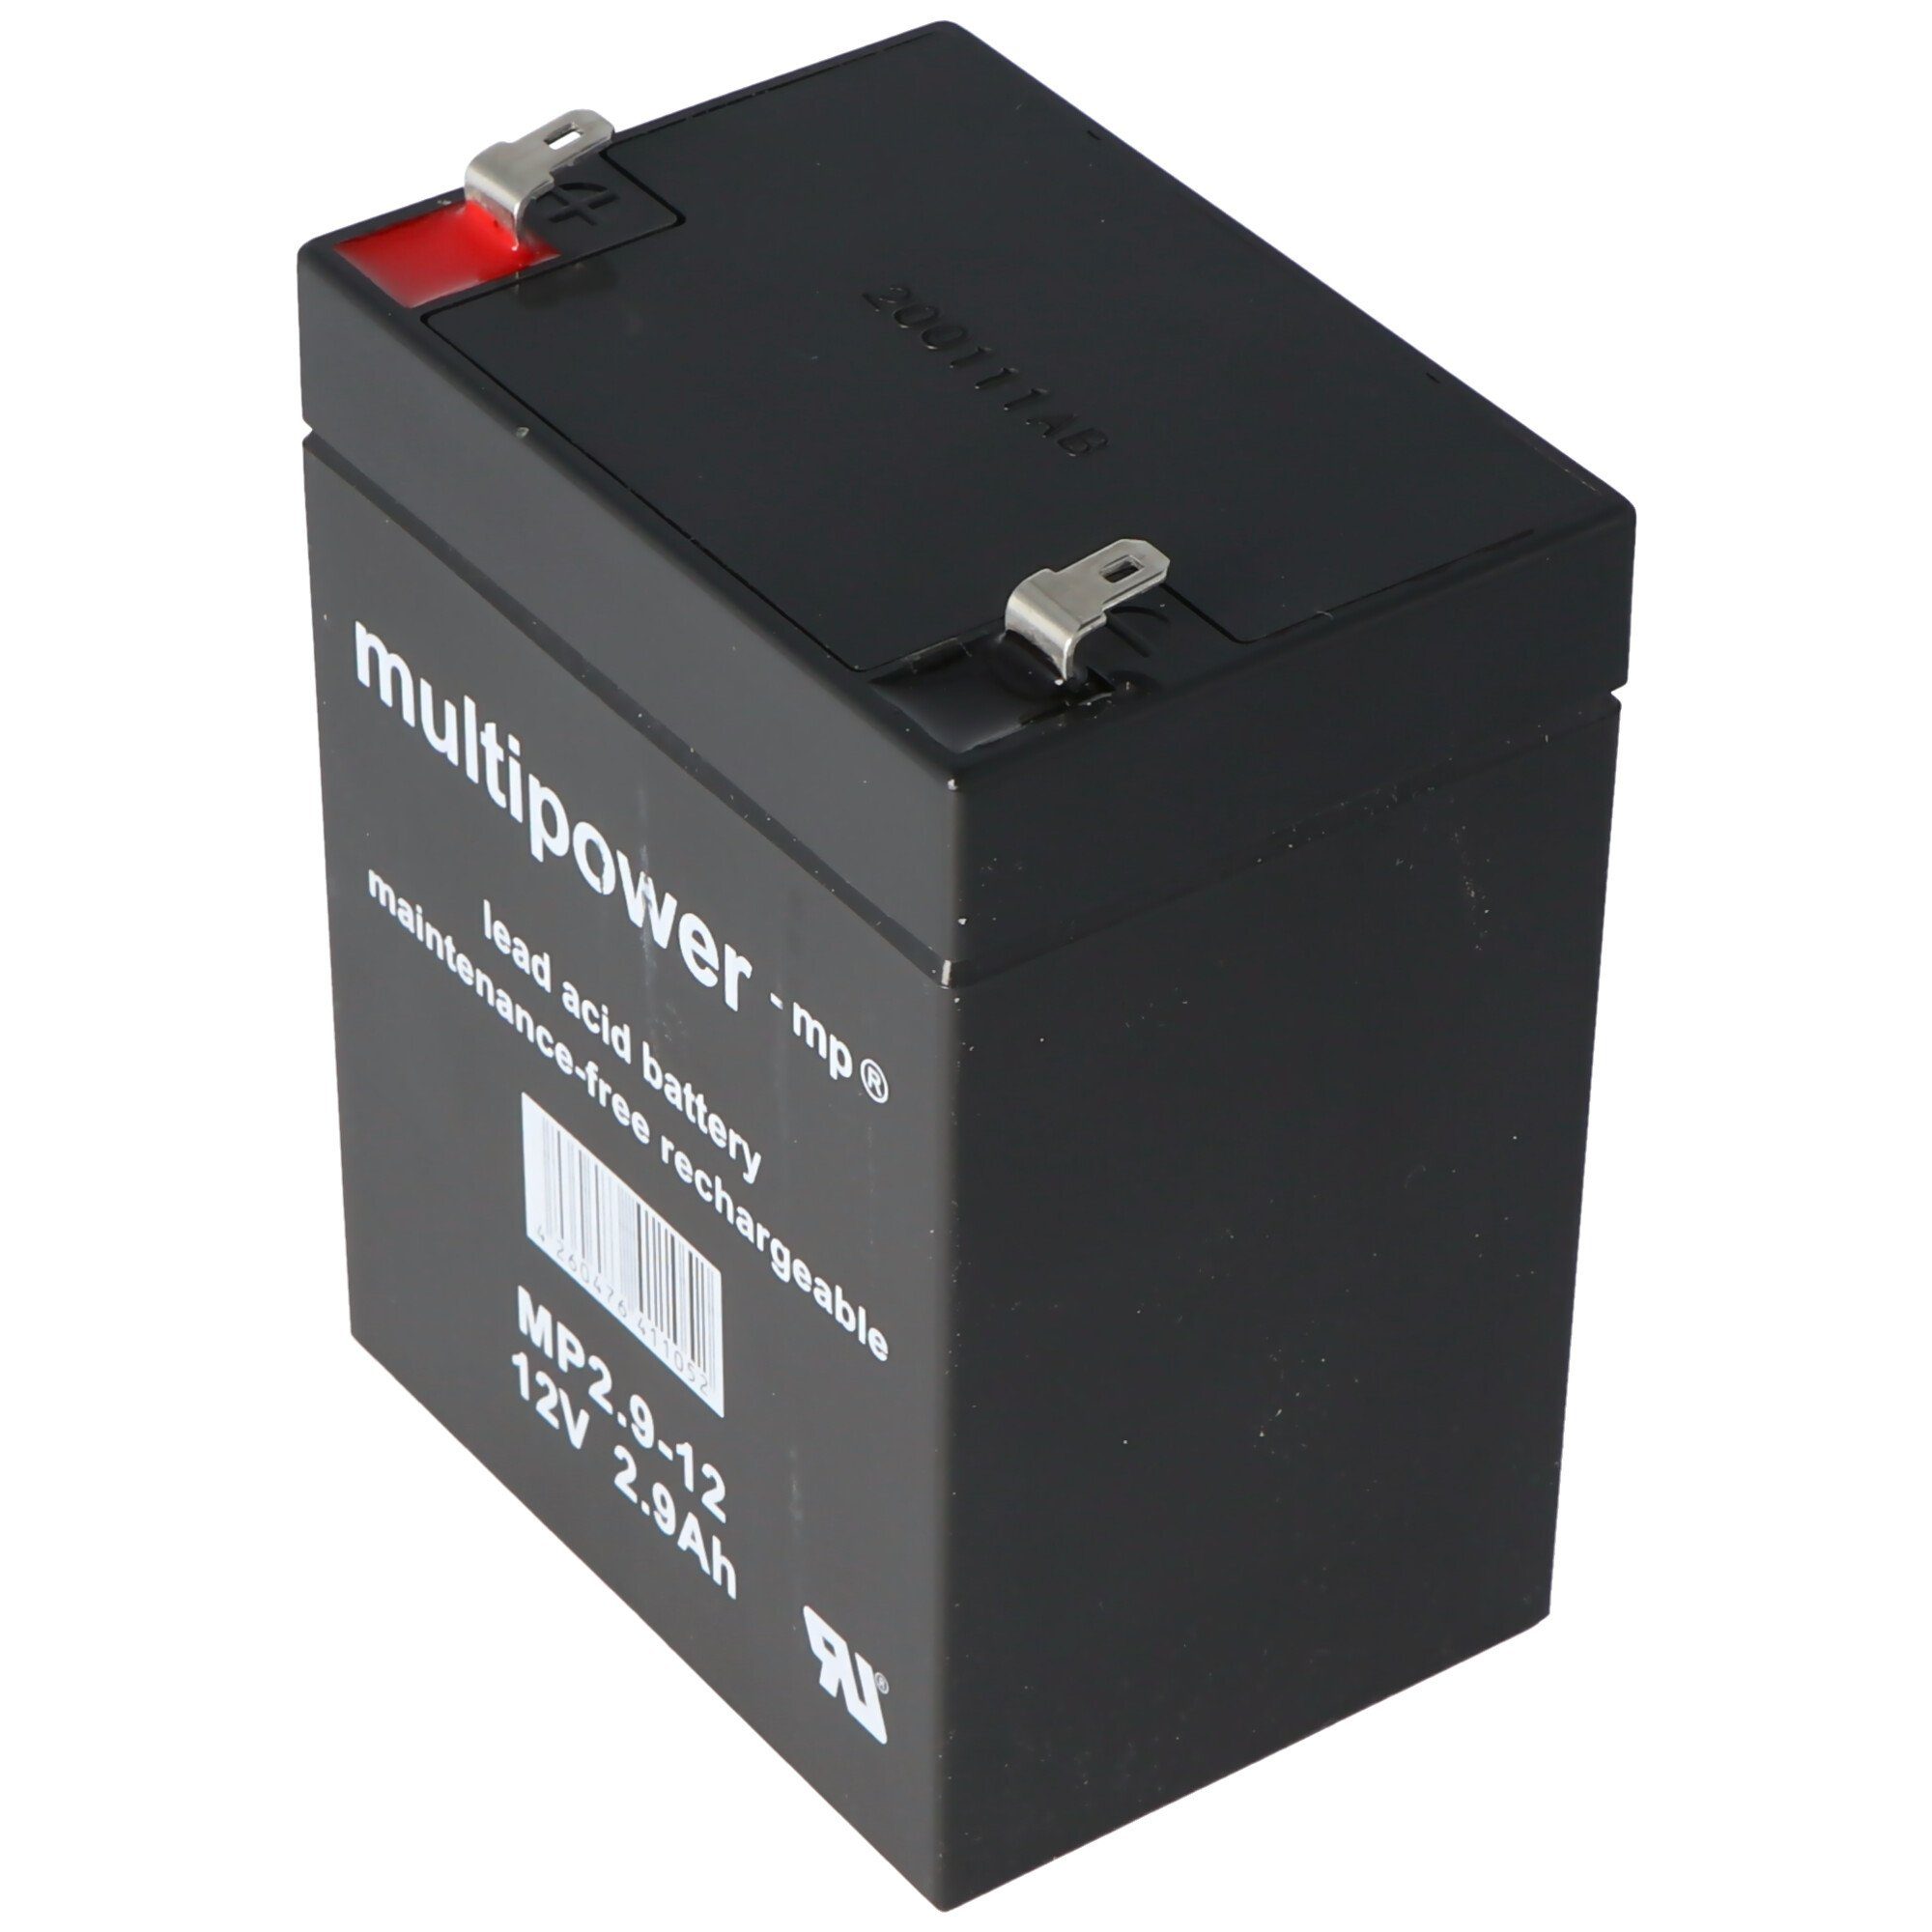 Multipower Akku passend für LD Systems Roadboy 65 Batterie für mobiles PA-Sounds Akku 2900 mAh (12,0 V)